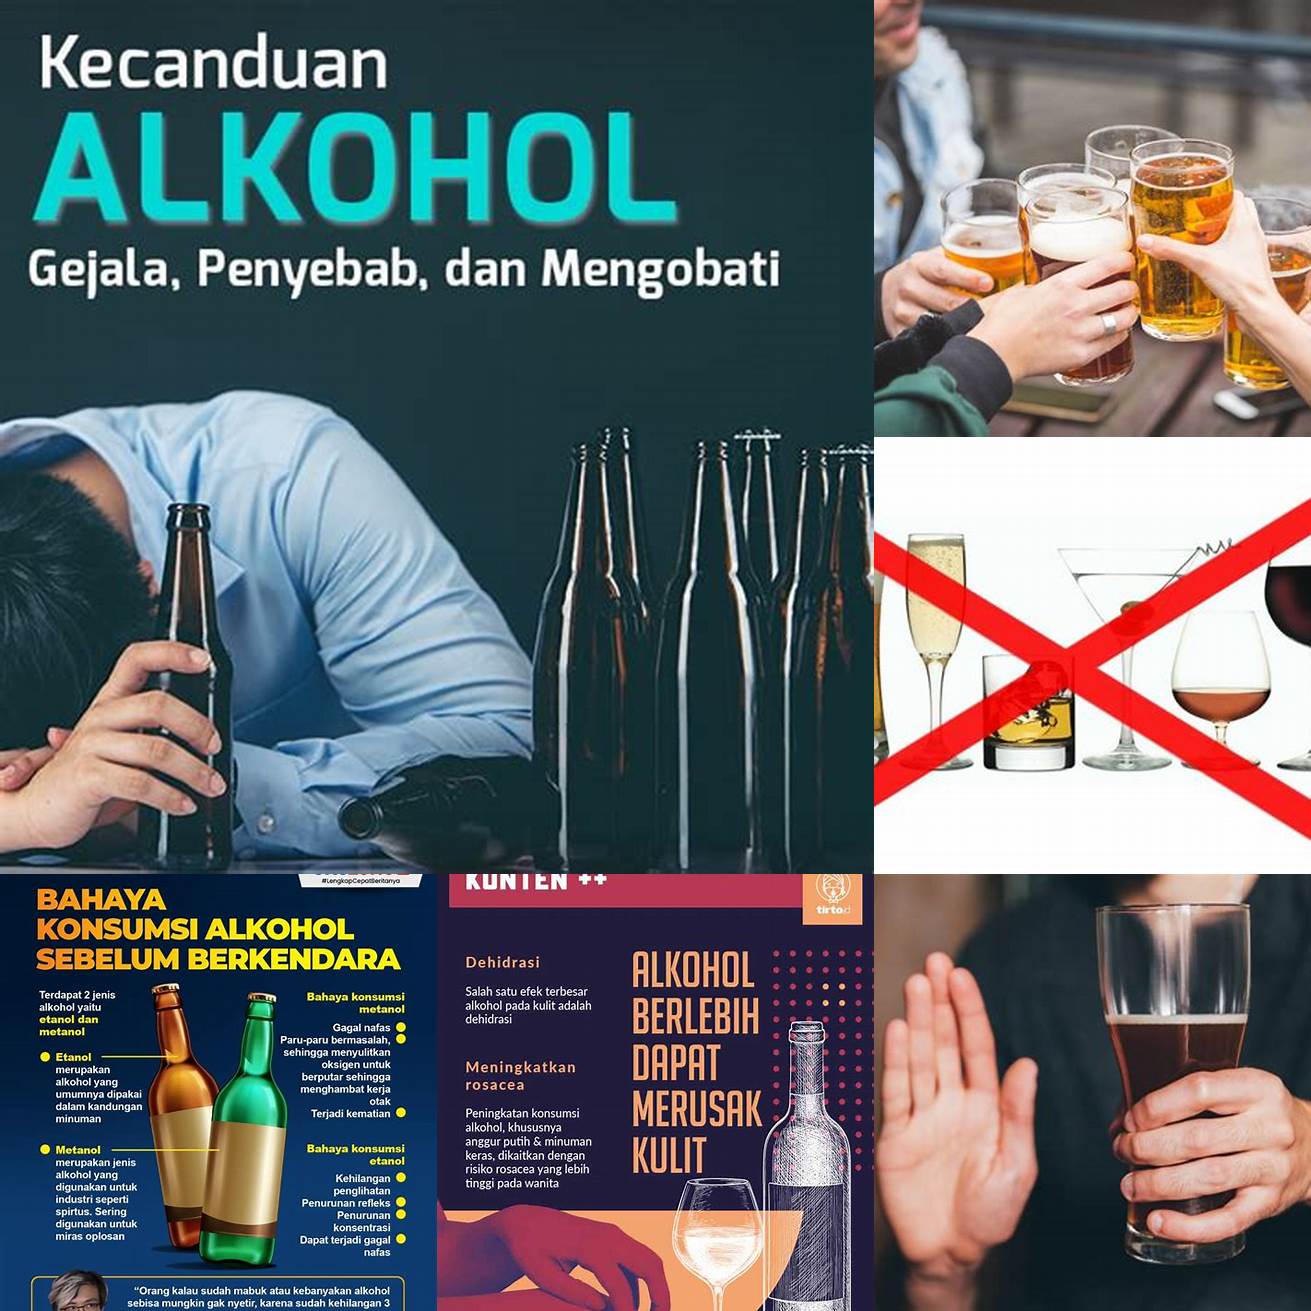 Menghindari konsumsi alkohol dan kafein